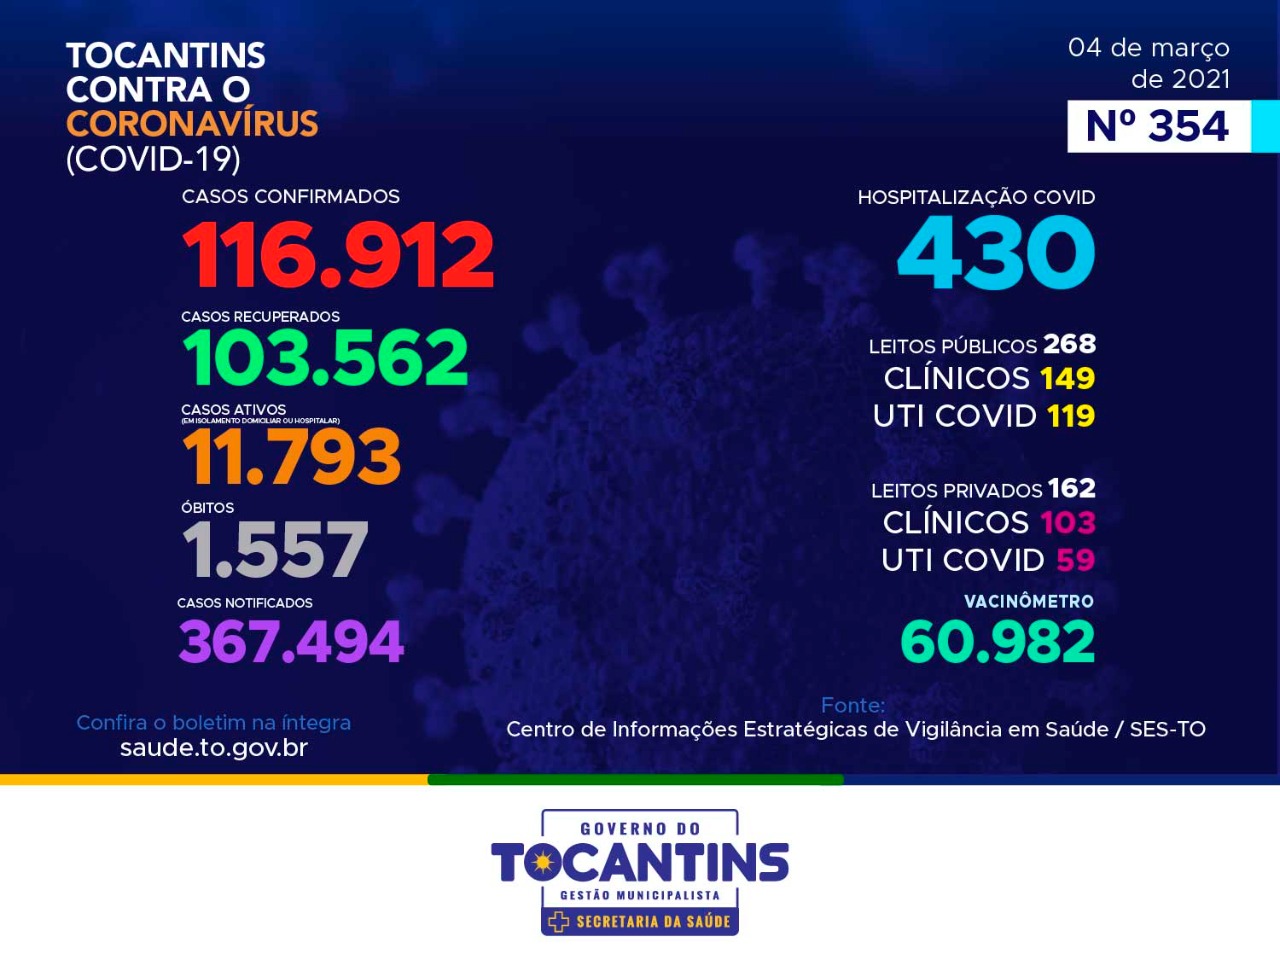 Coronavírus: Tocantins registra 909 novos casos nesta quinta-feira, 4